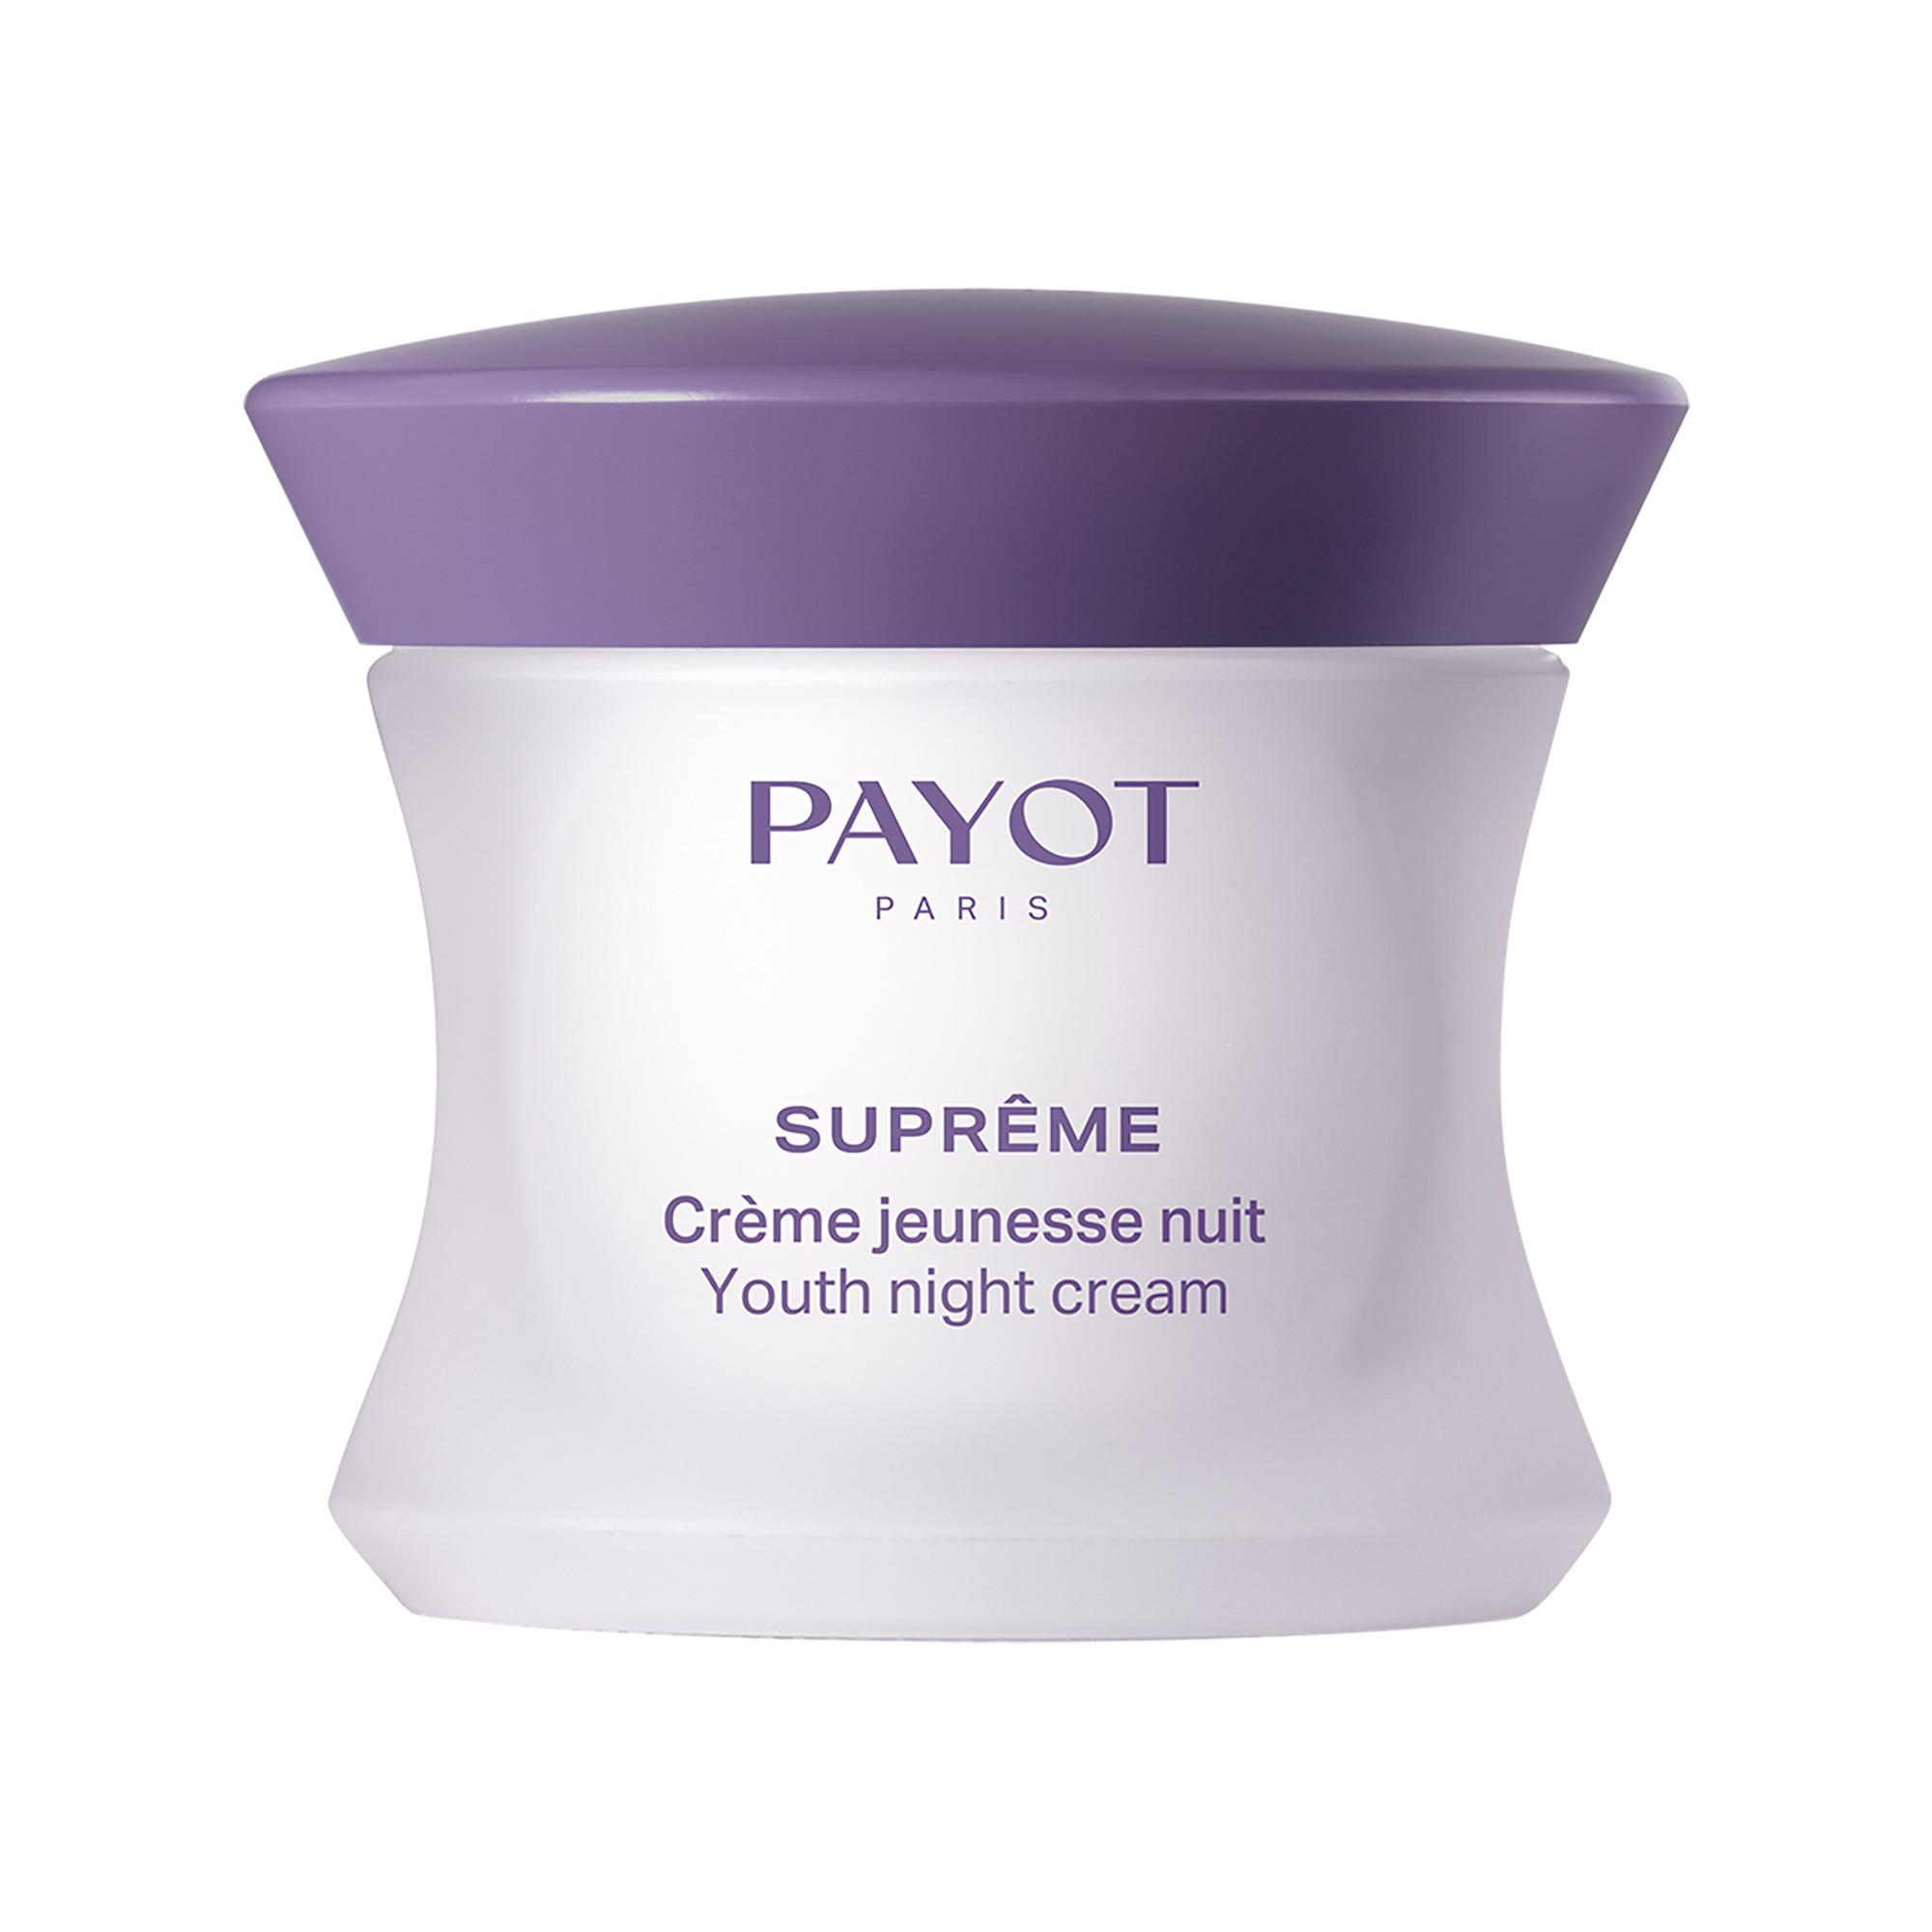 PAYOT Suprême Crème Jeunesse Nuit Suprême Youth Night Cream 